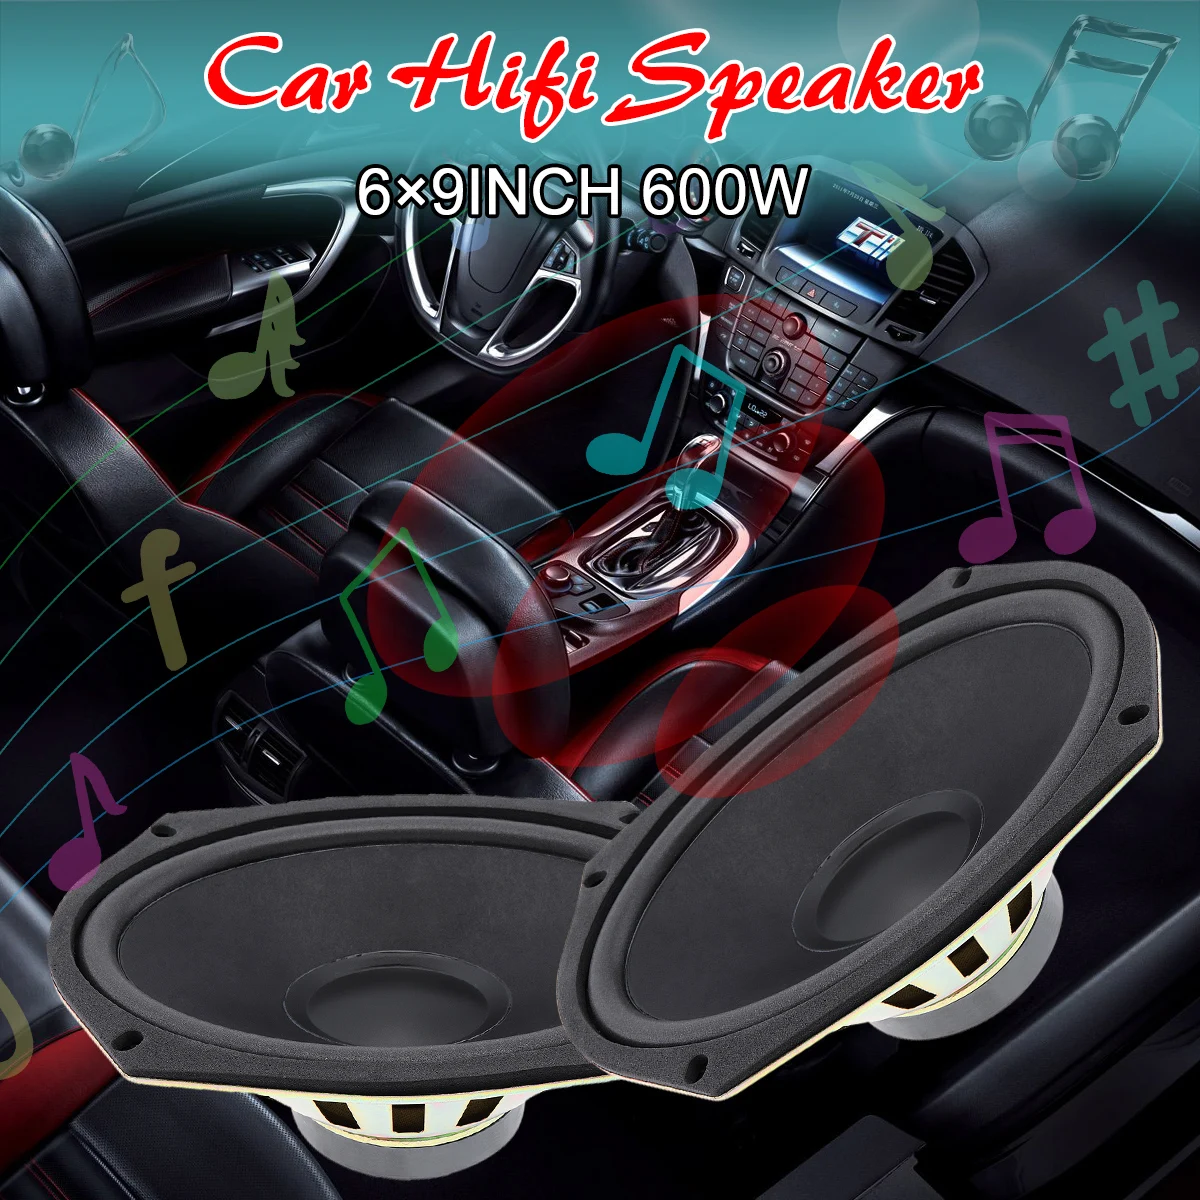 polegada coaxial do carro porta áudio música estéreo gama completa freqüência de alta fidelidade para carro